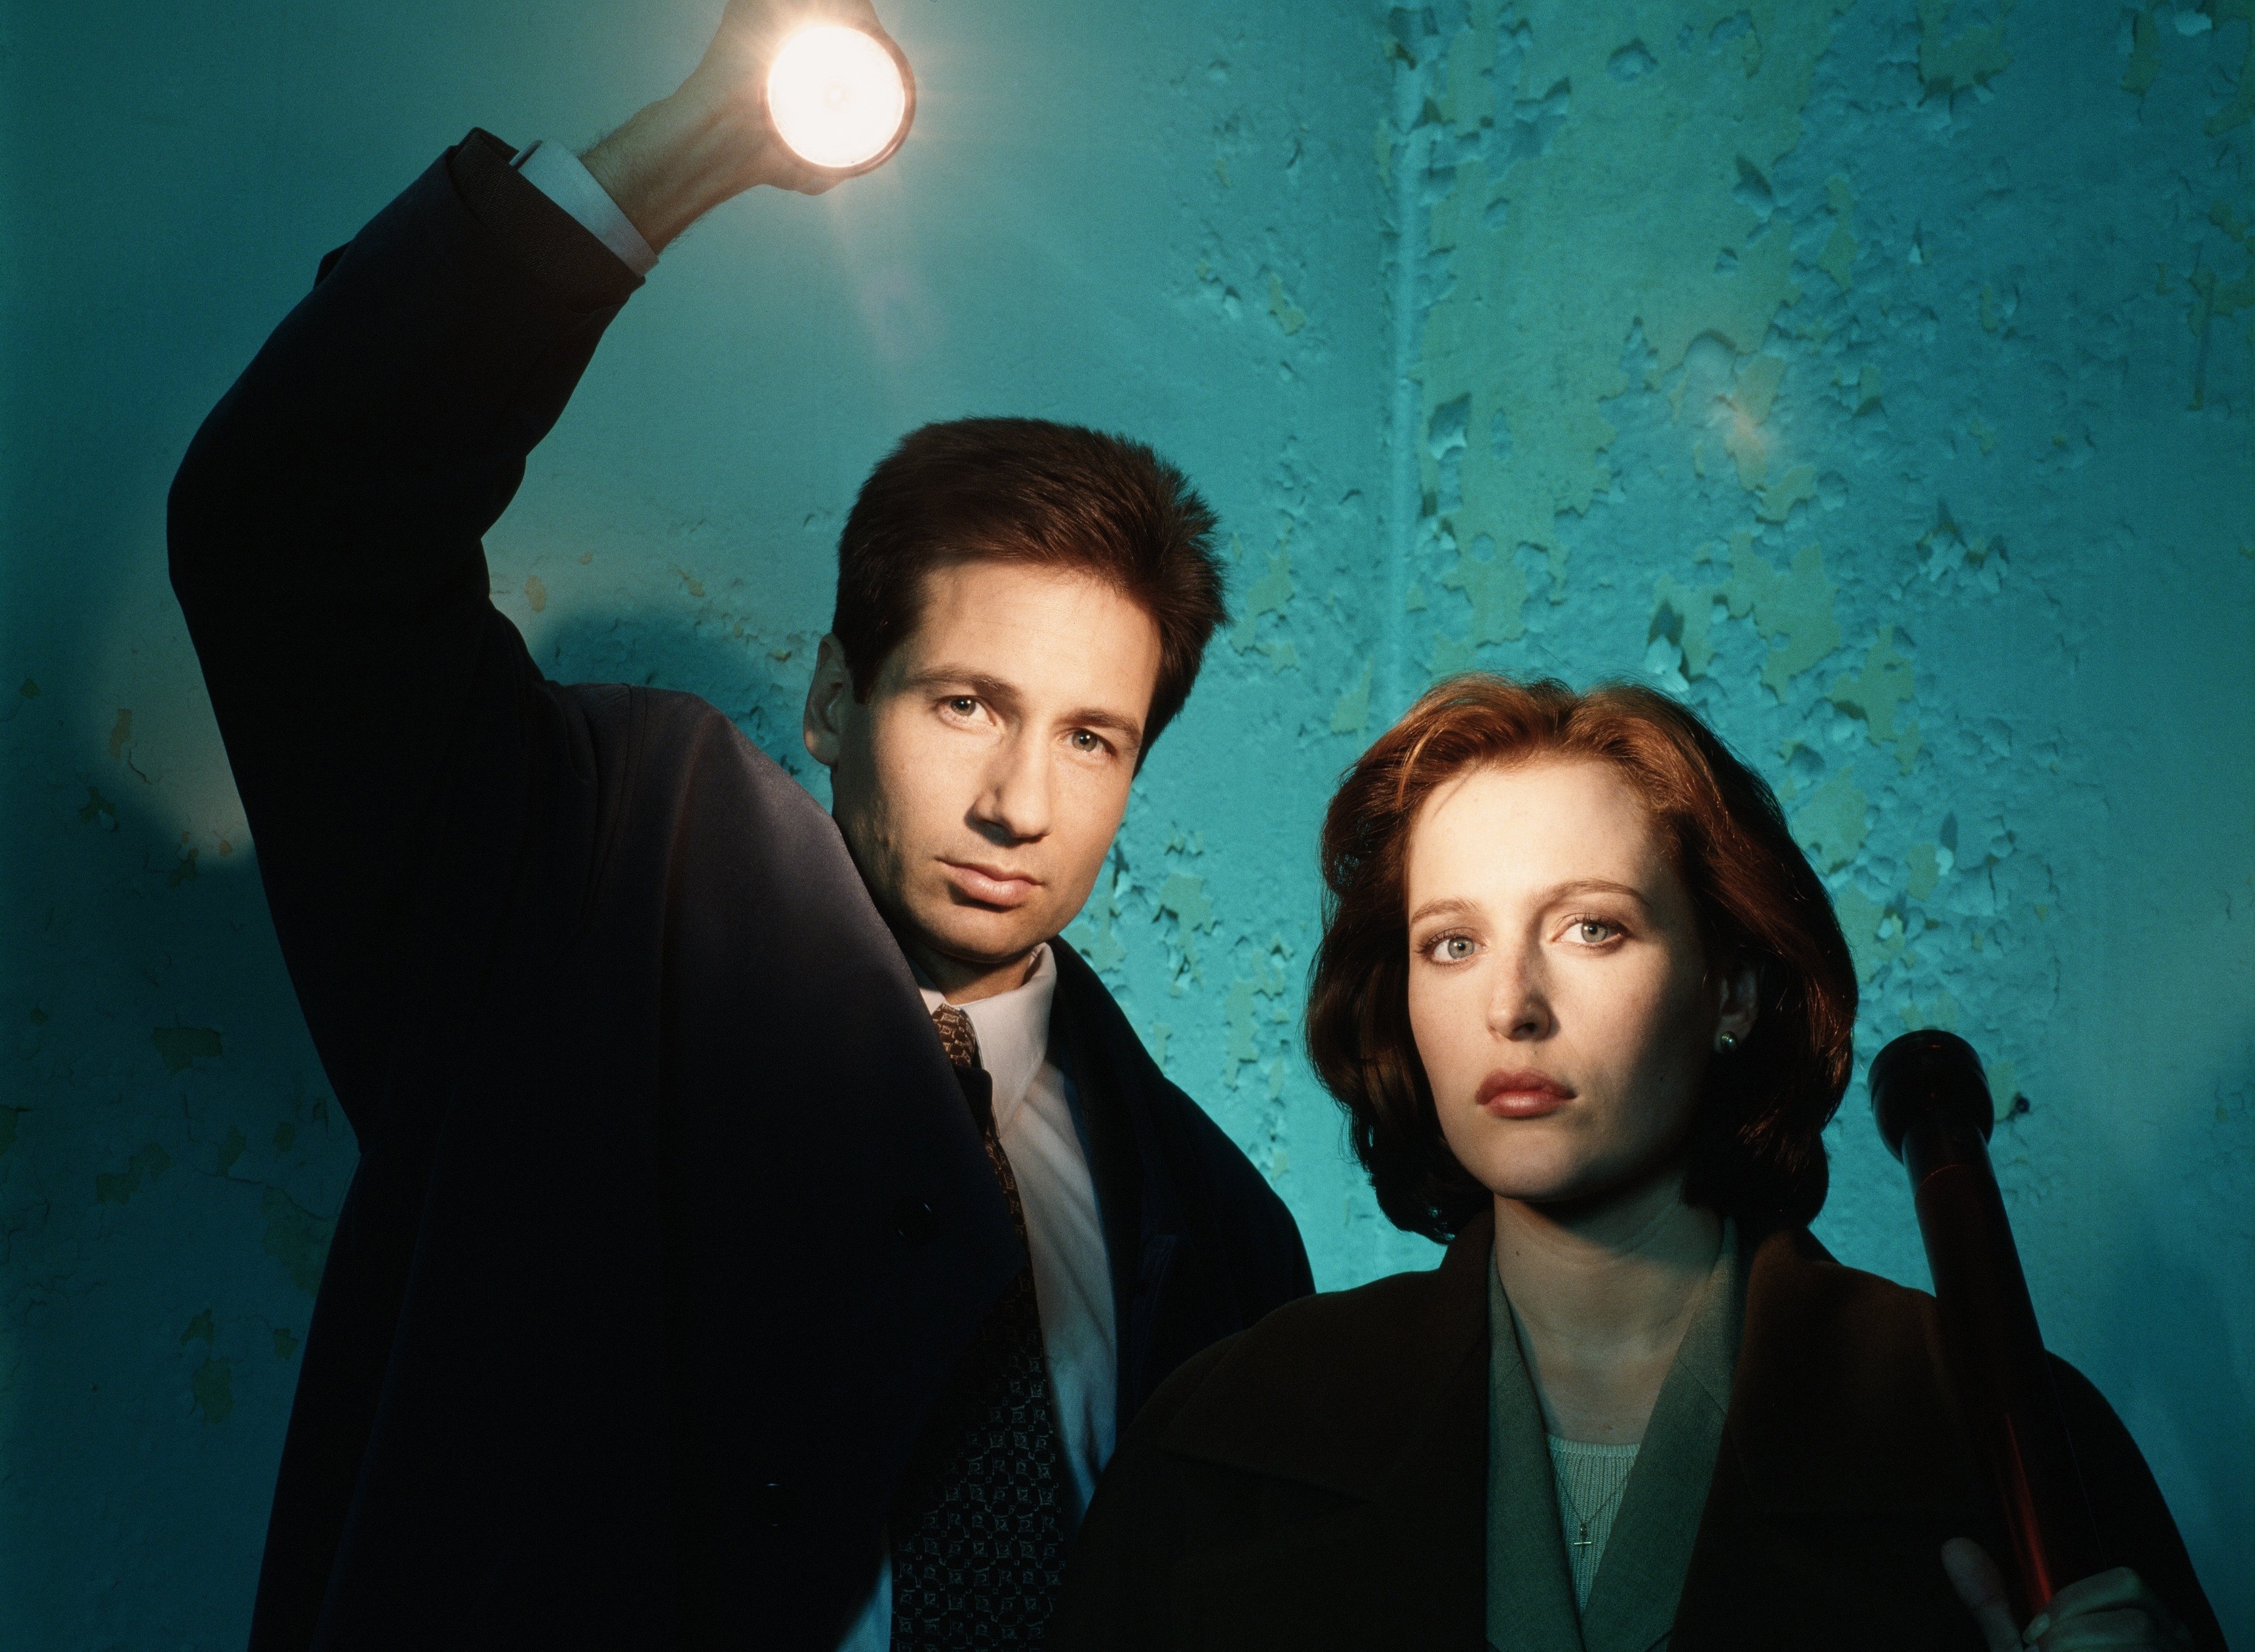 Скачать обои The X-Files, Секретные материалы, Скалли, Малдер, раздел фильм...